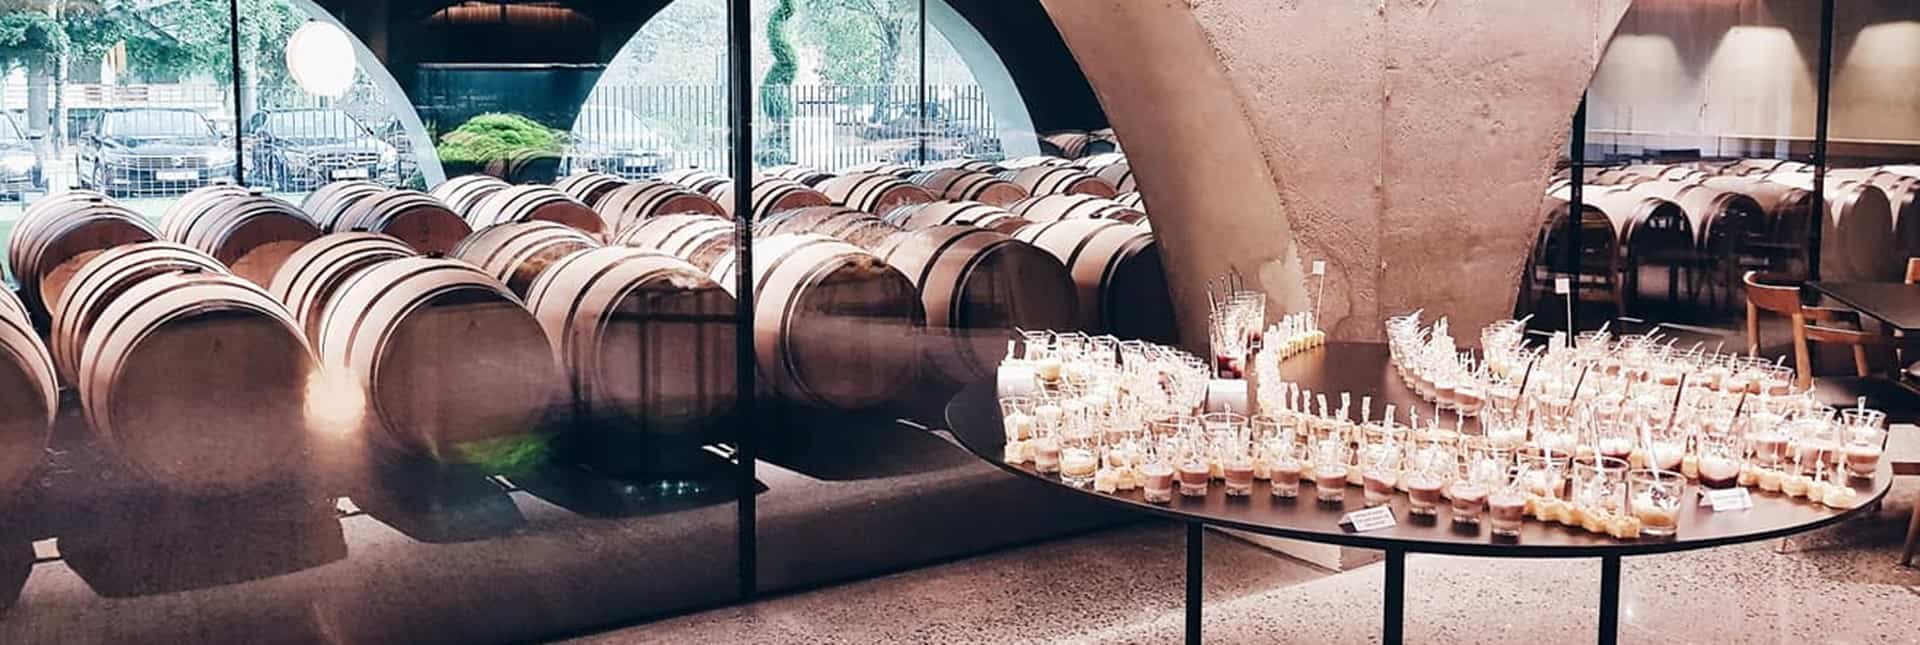 Galić winery